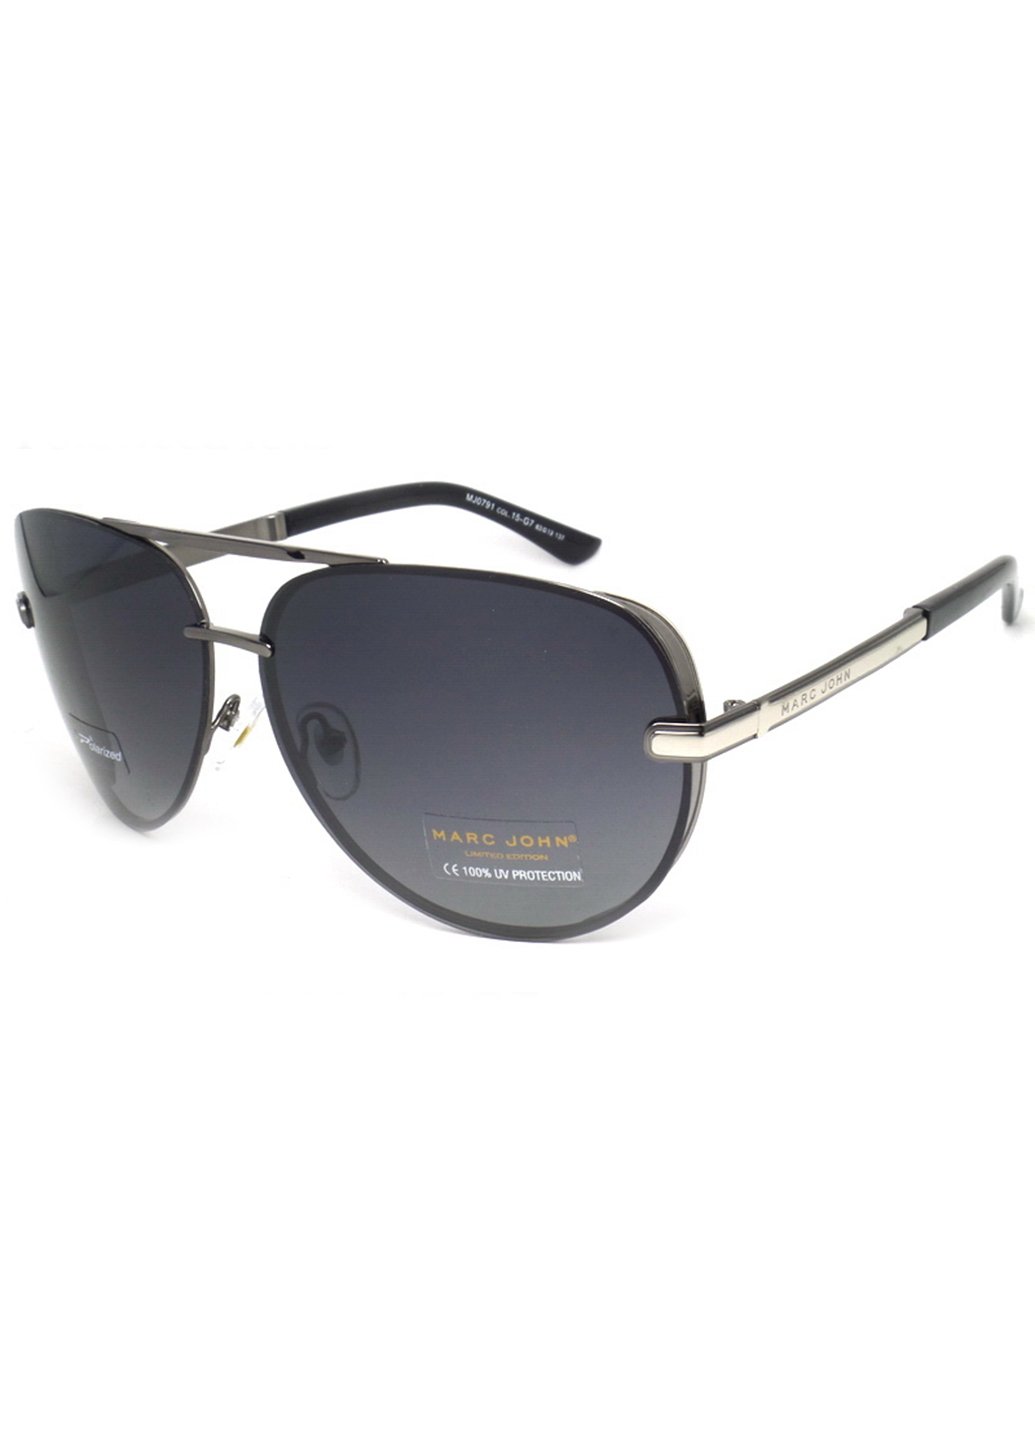 Купить Мужские солнцезащитные очки Marc John с поляризацией MJ0791 190014 - Черный в интернет-магазине